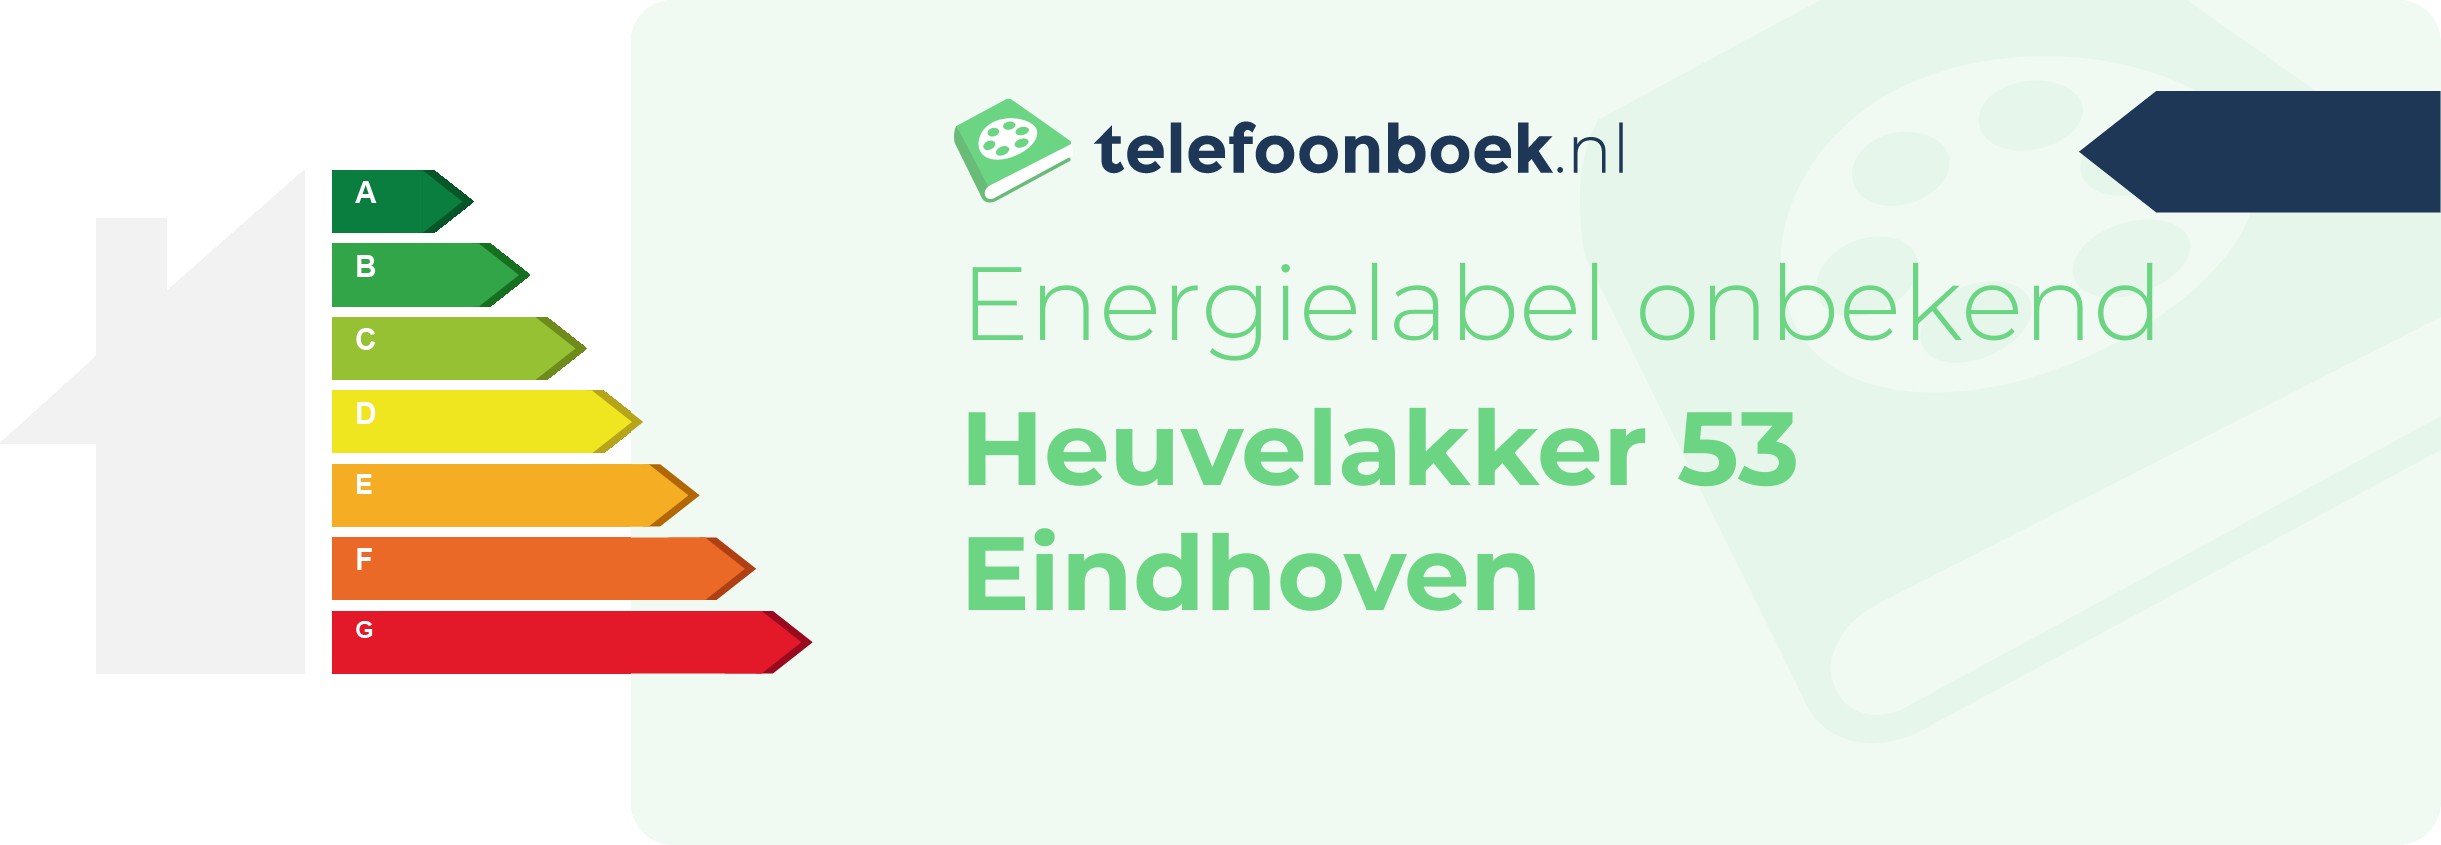 Energielabel Heuvelakker 53 Eindhoven